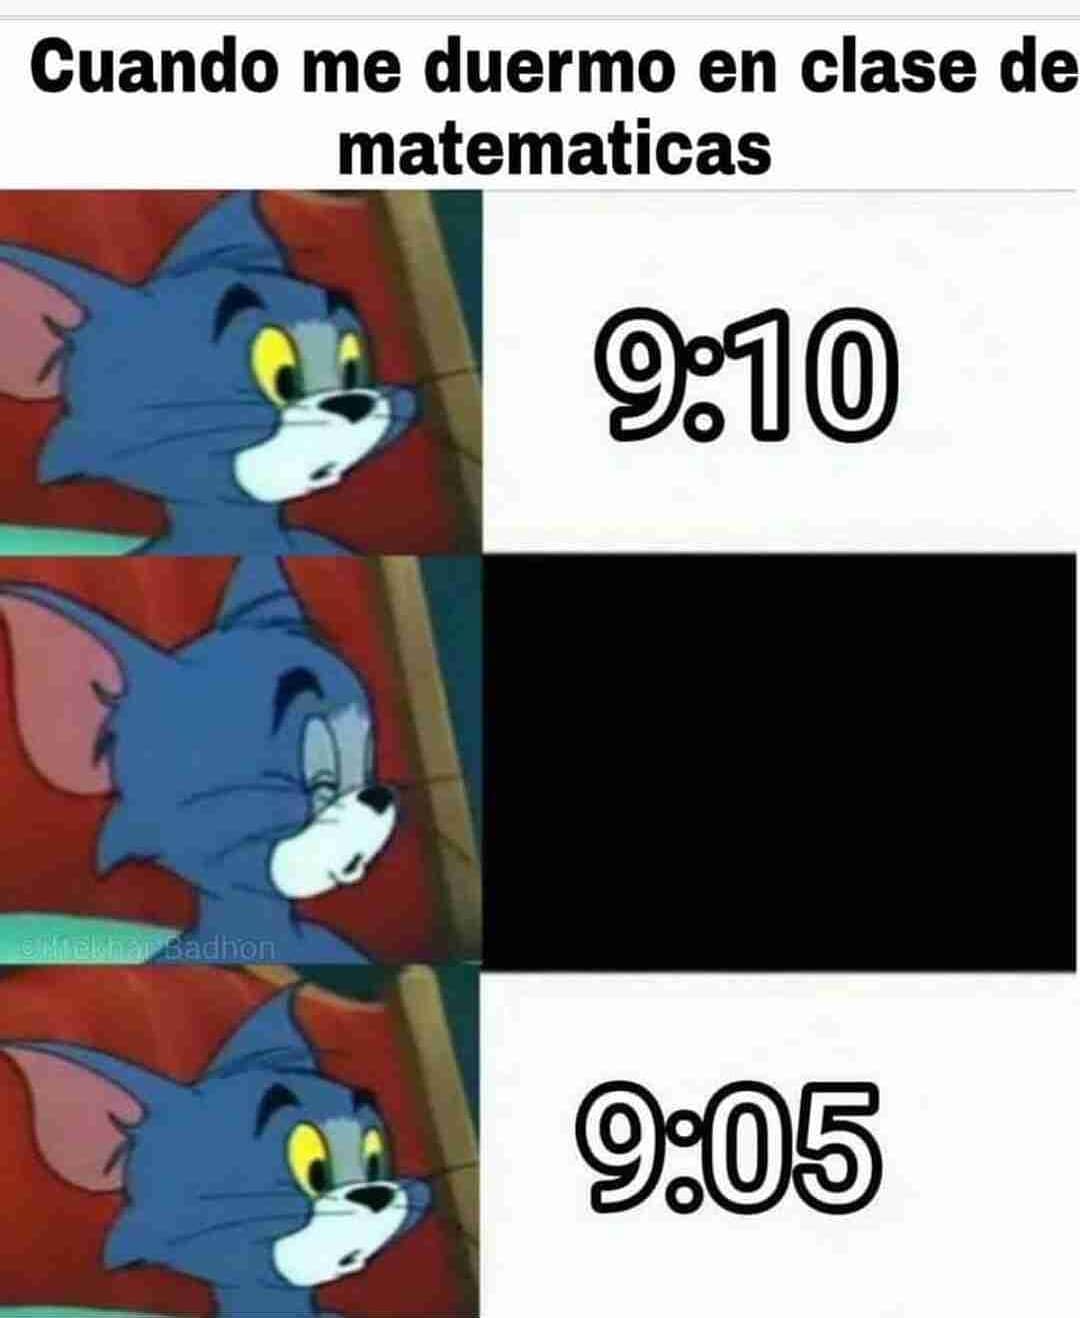 Cuando me duermo en clase de matematicas.